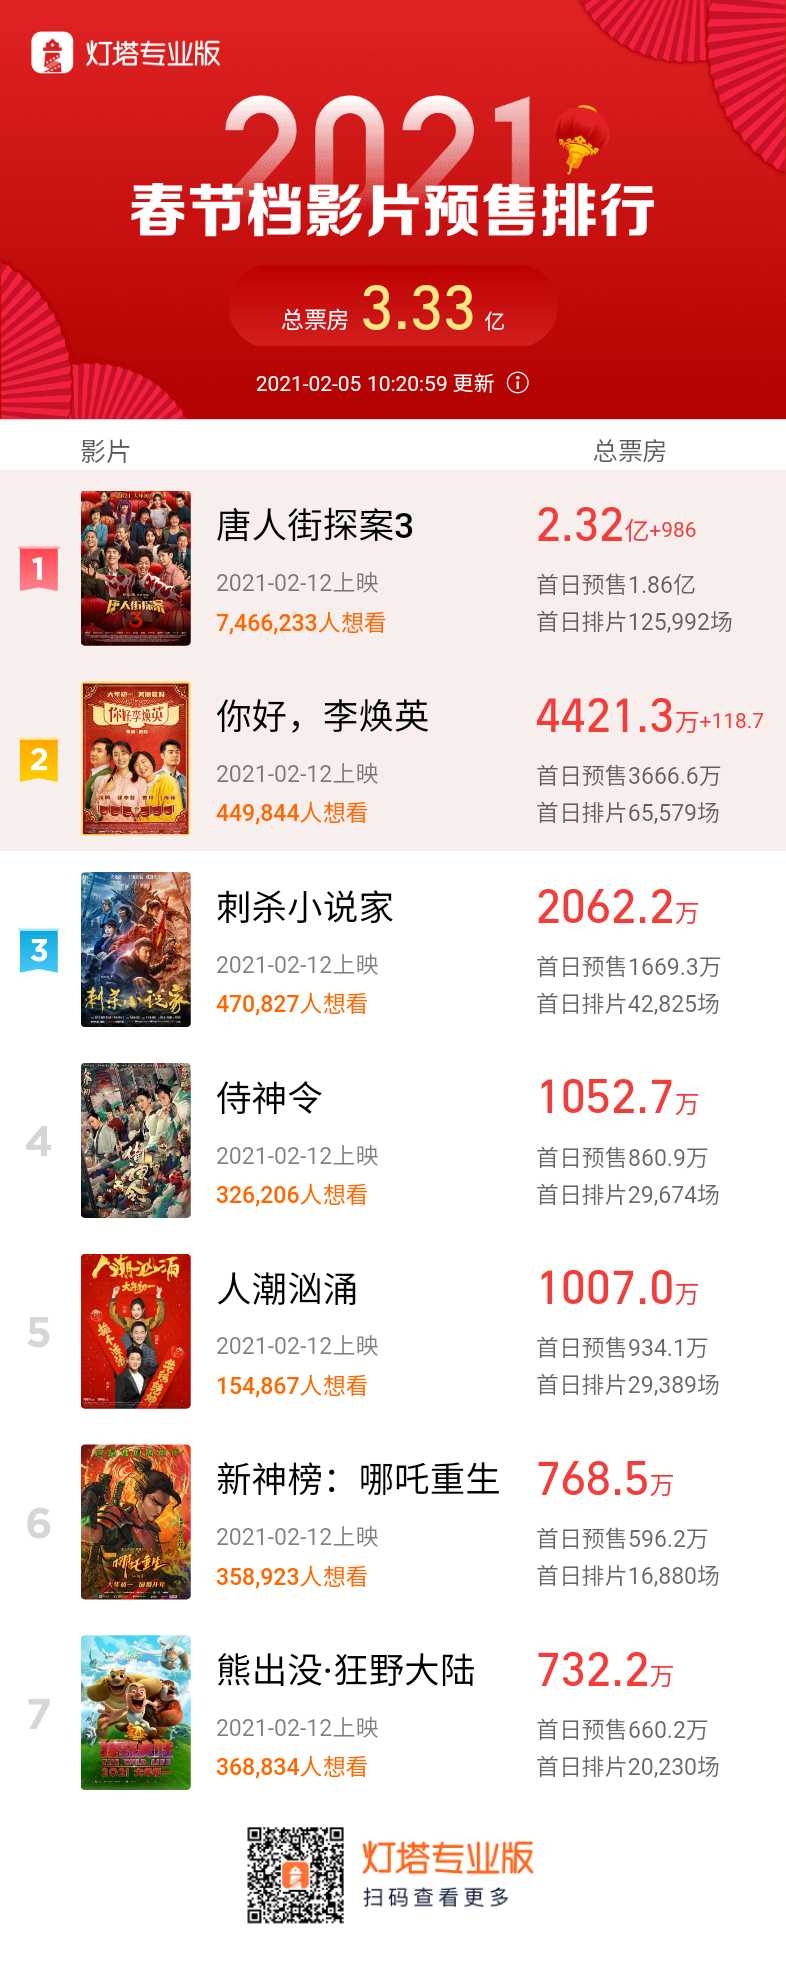 春节期间北京电影院上座率将降至不超50%